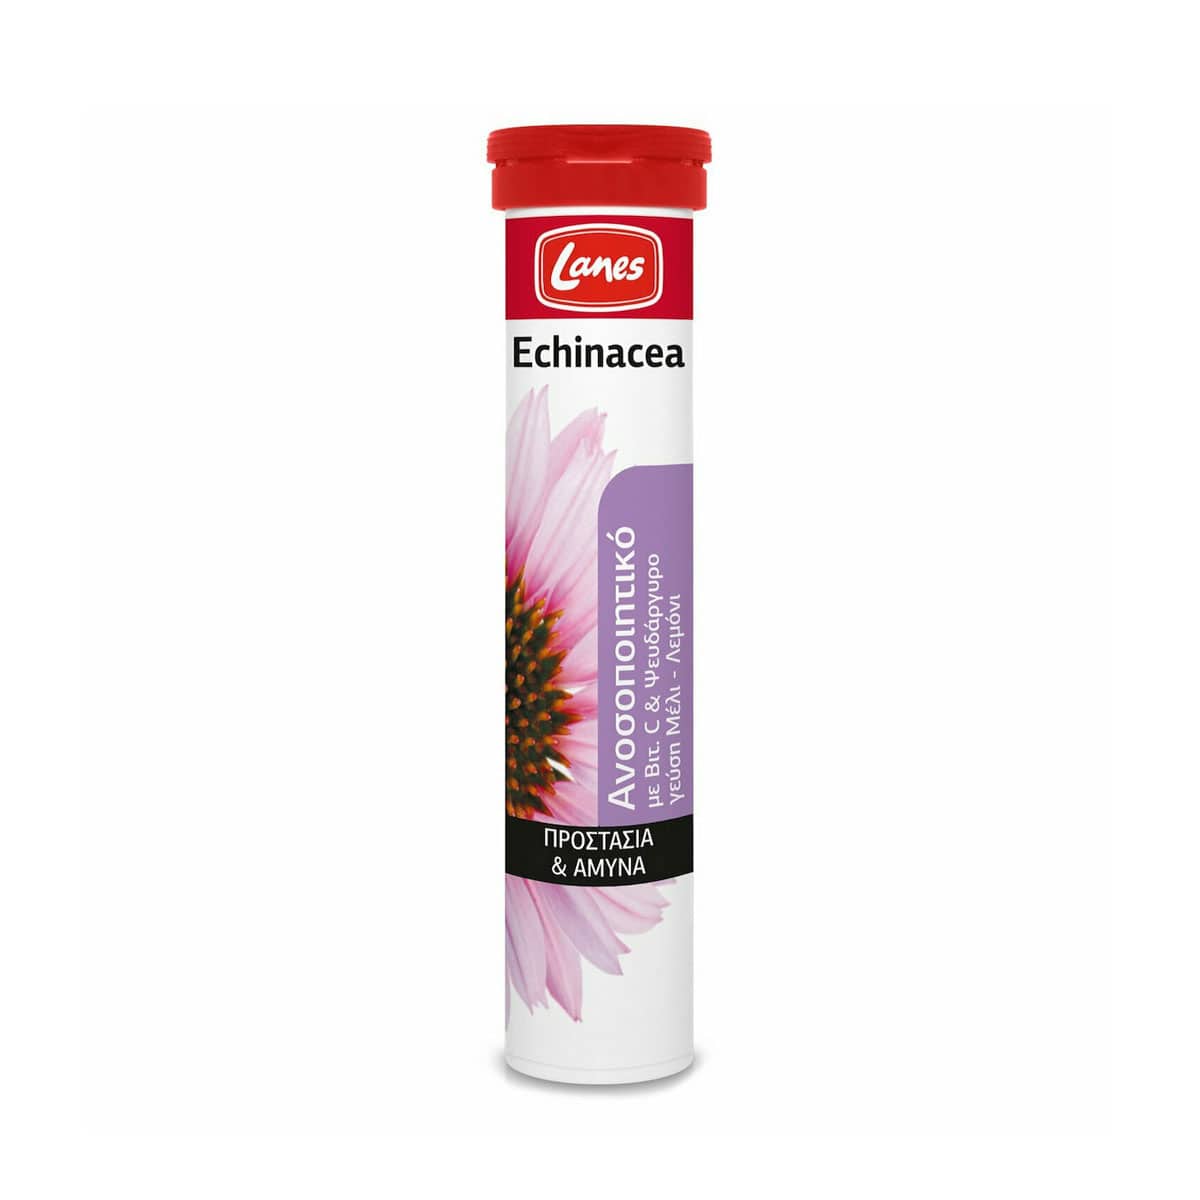 Lanes-Echinacea-me-Echinacea,-Bitaminh-C,-Pseudargyro-Aserola-&-Agriotriantafyllia-20-anabrazonta-diskia-5201314047438